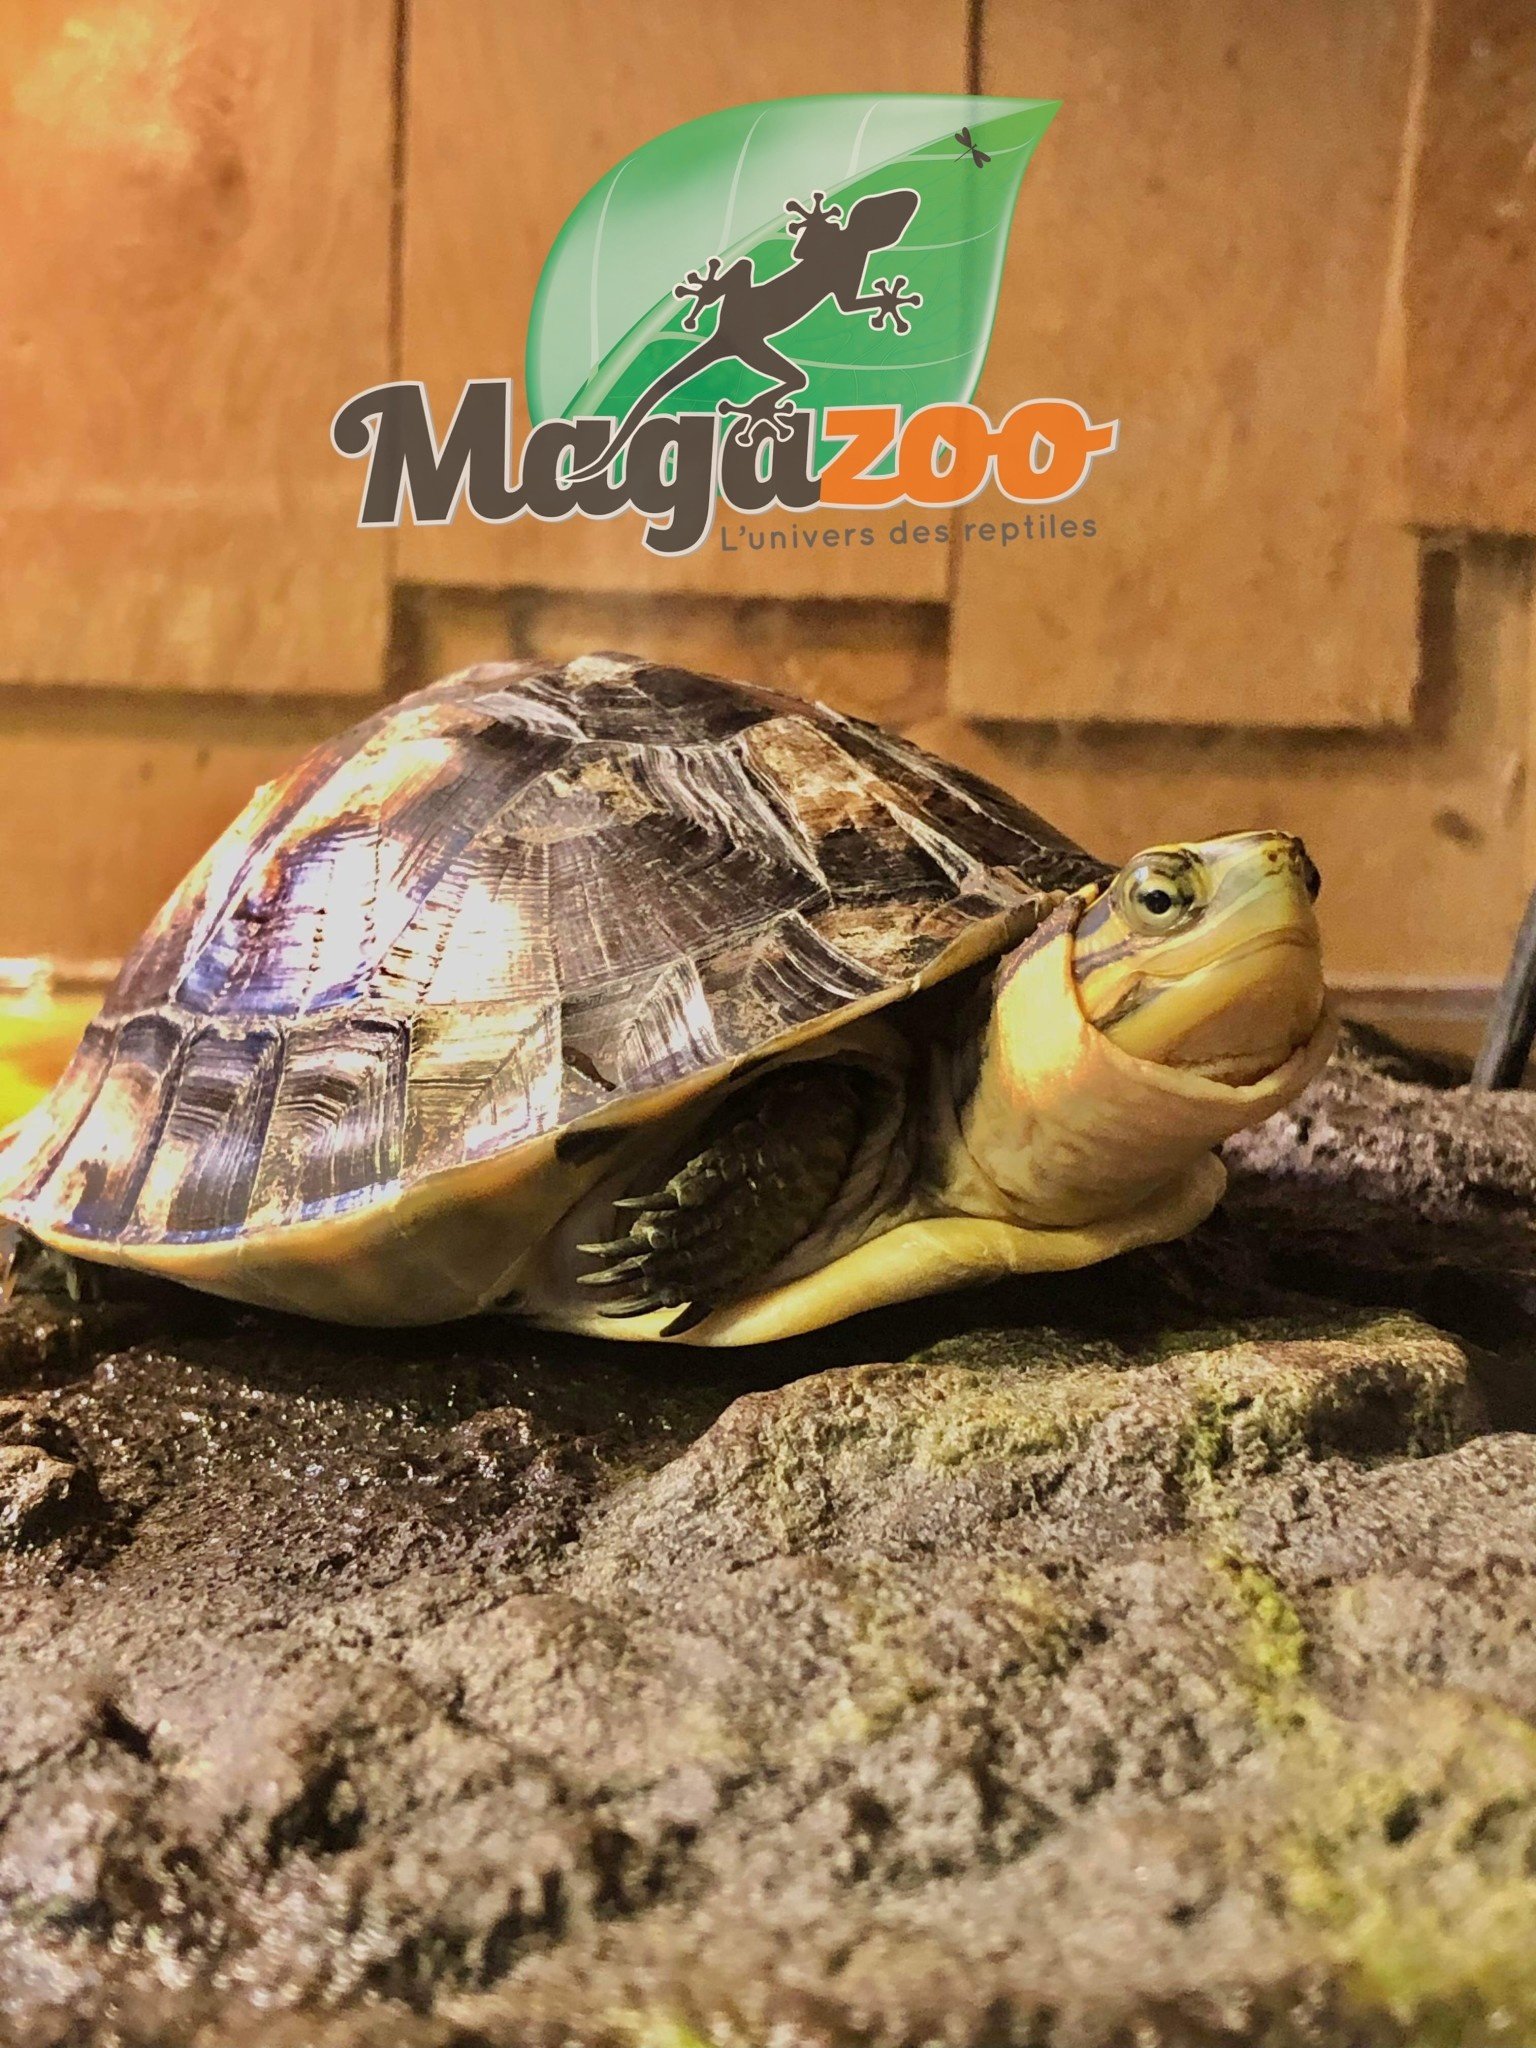 Magazoo Malayan Box turtle